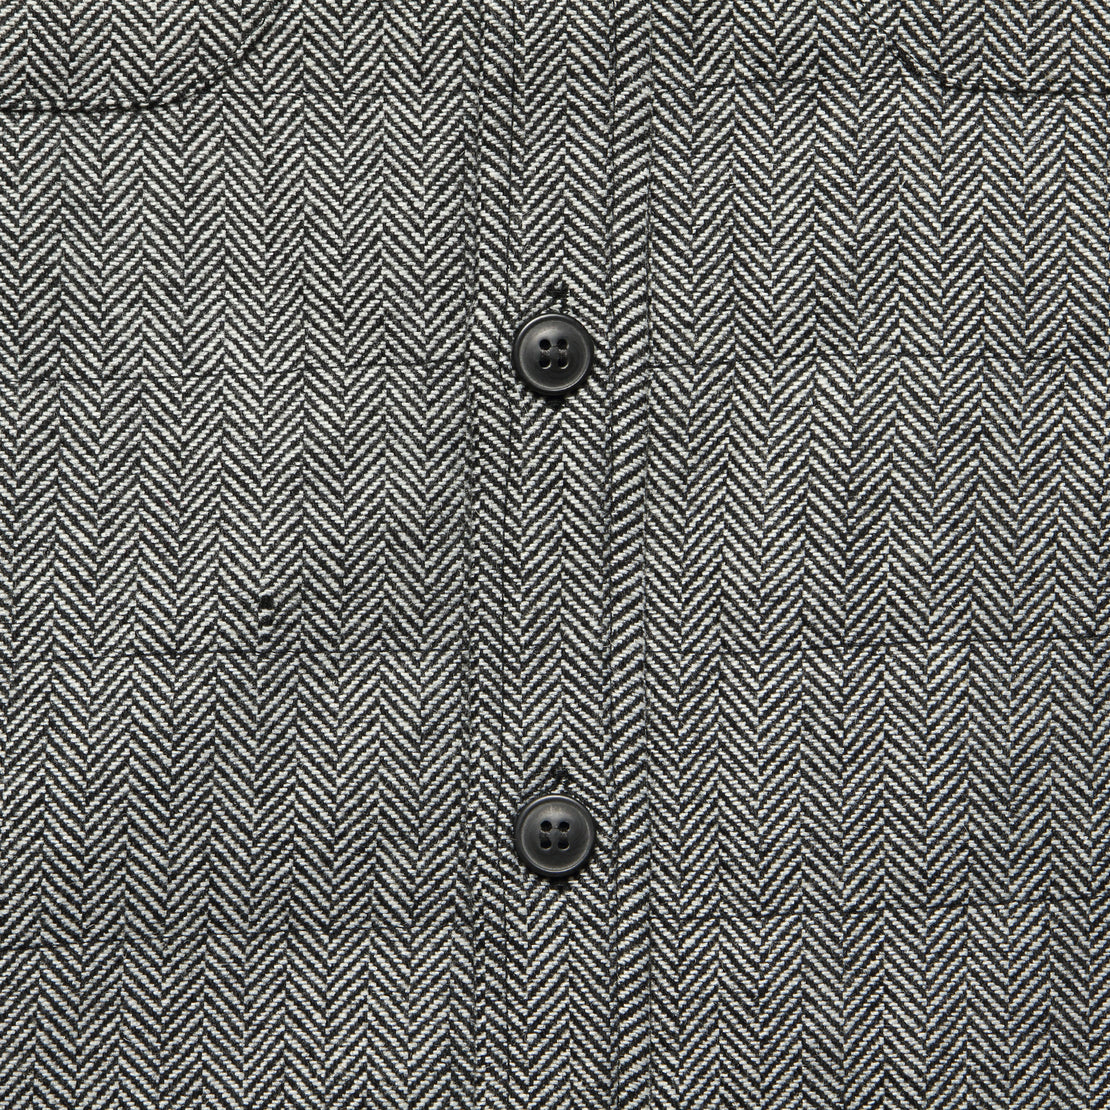 Russell Shirt Jacket - Charcoal Herringbone